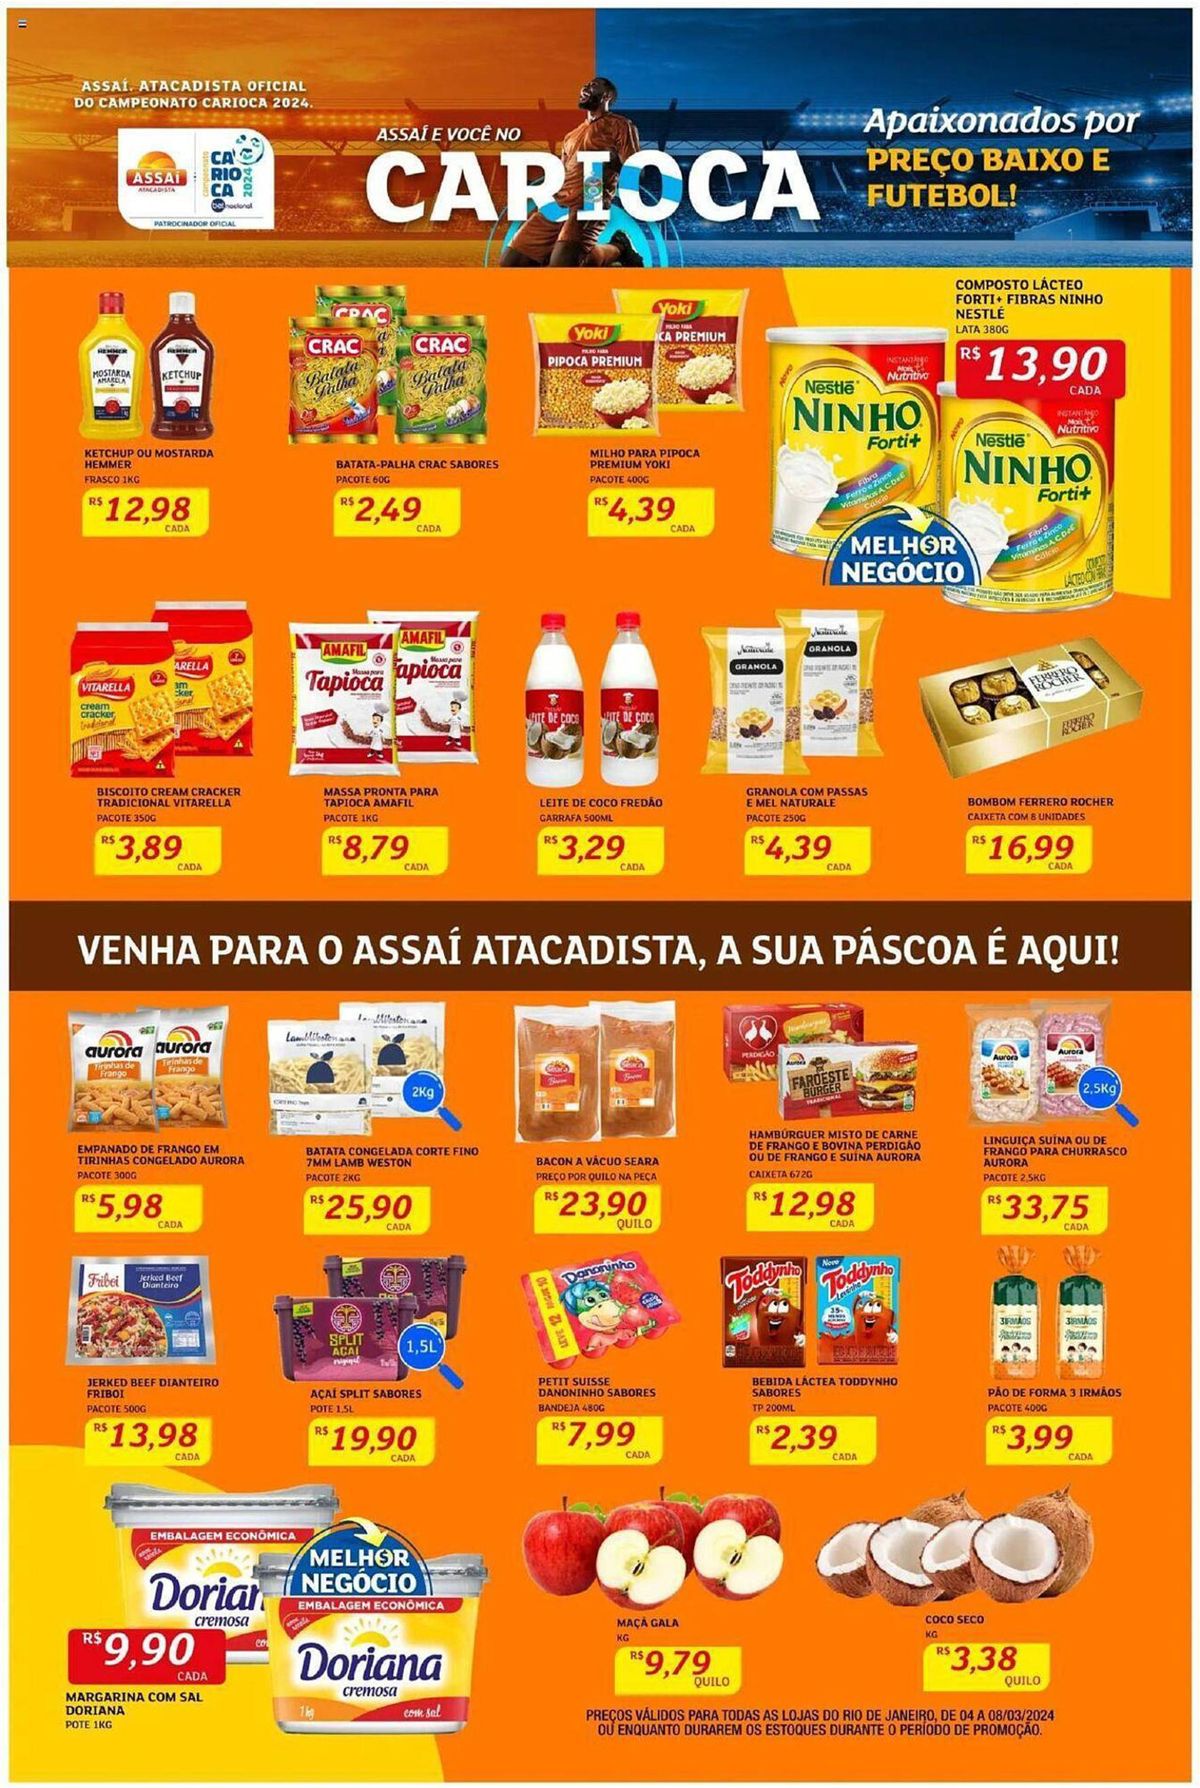 Promoção de Supermercados - Milho para pipoca, batata-palha, biscoito cream cracker e mais!